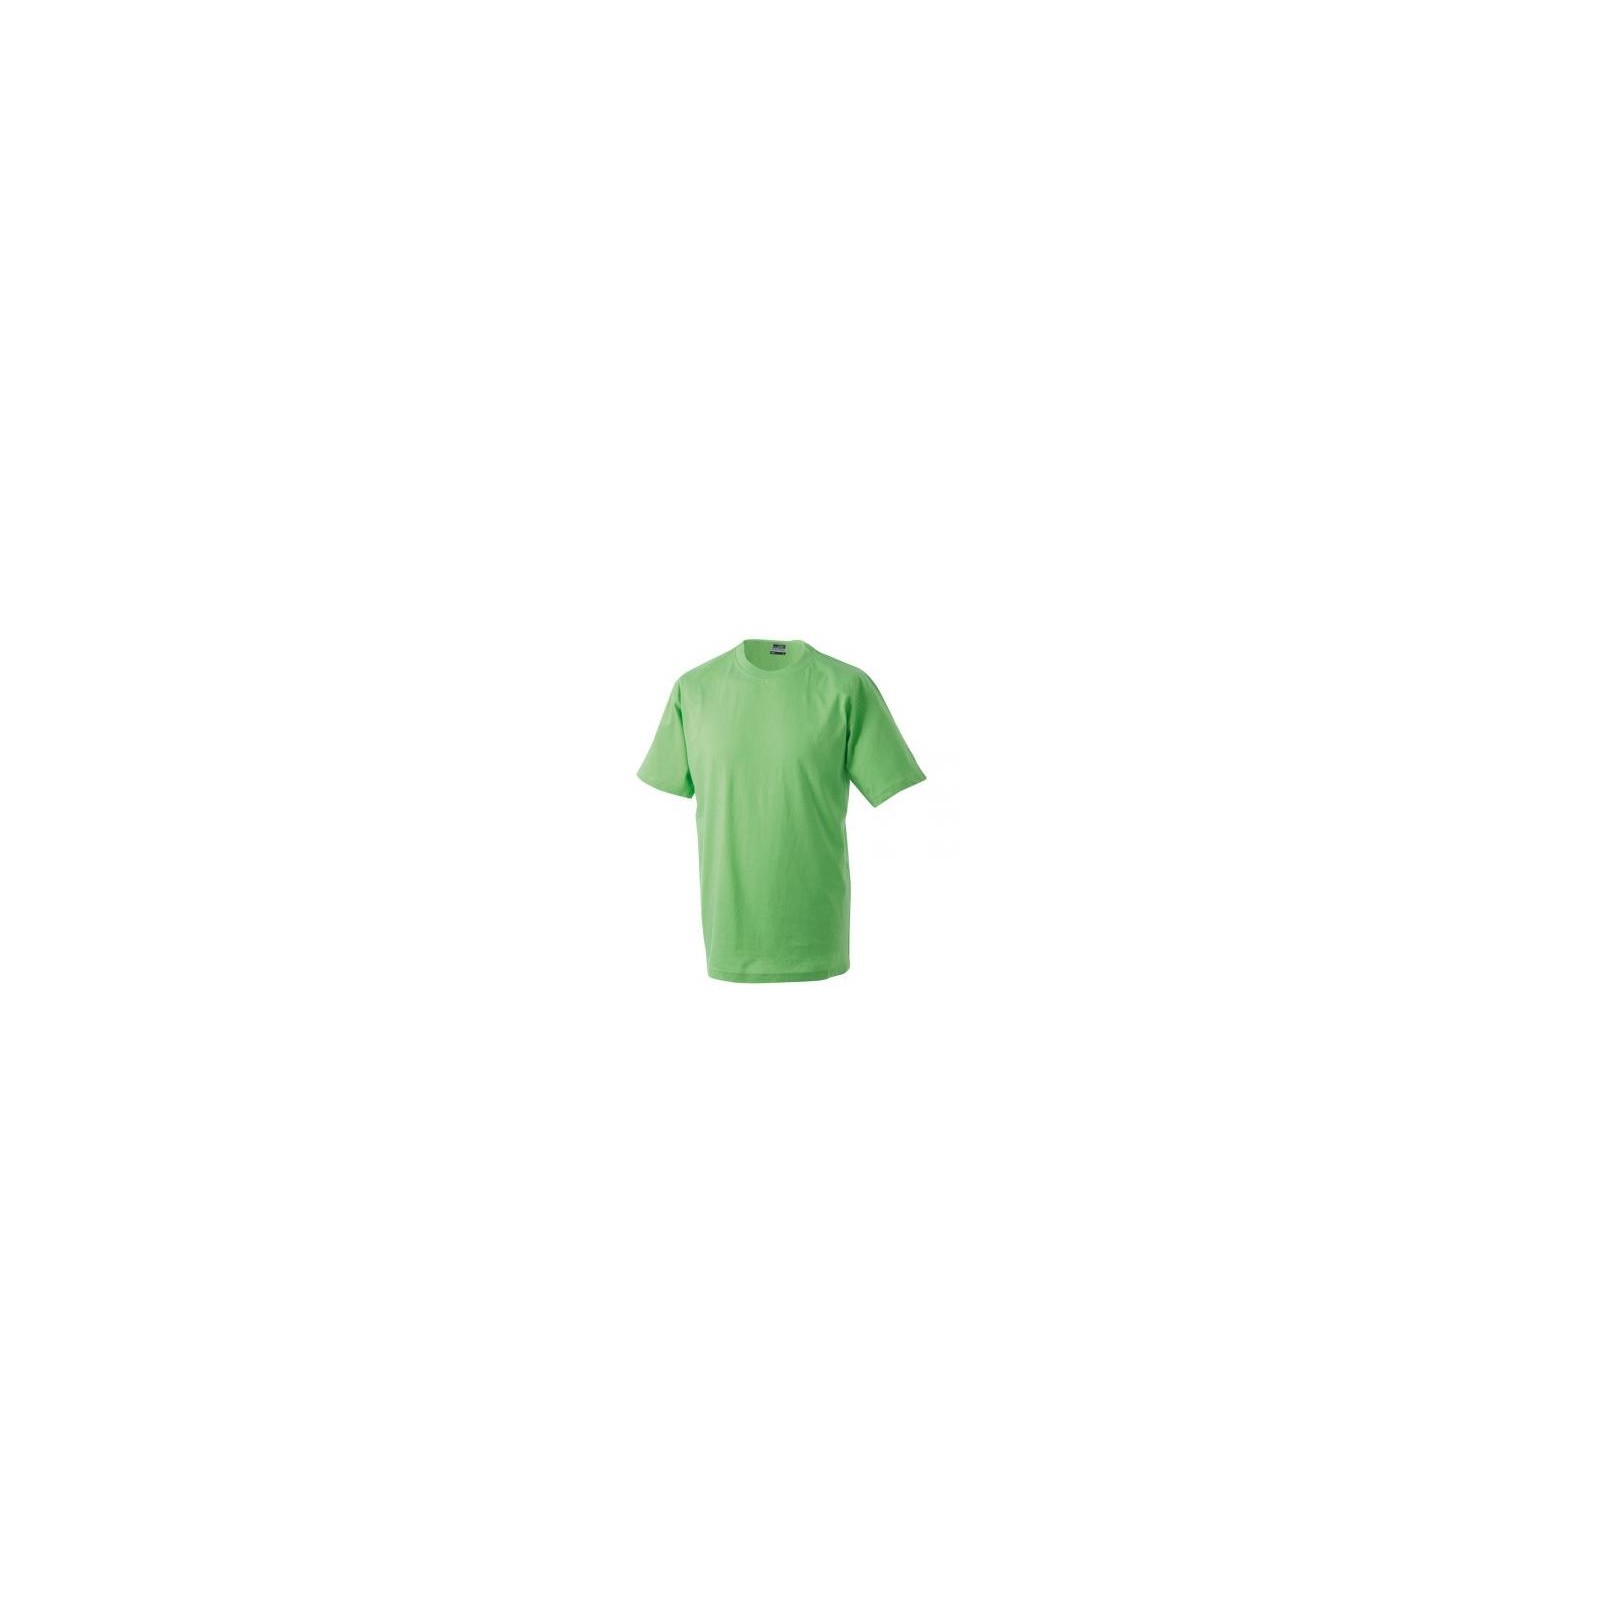 T-shirt Homme Vert clair